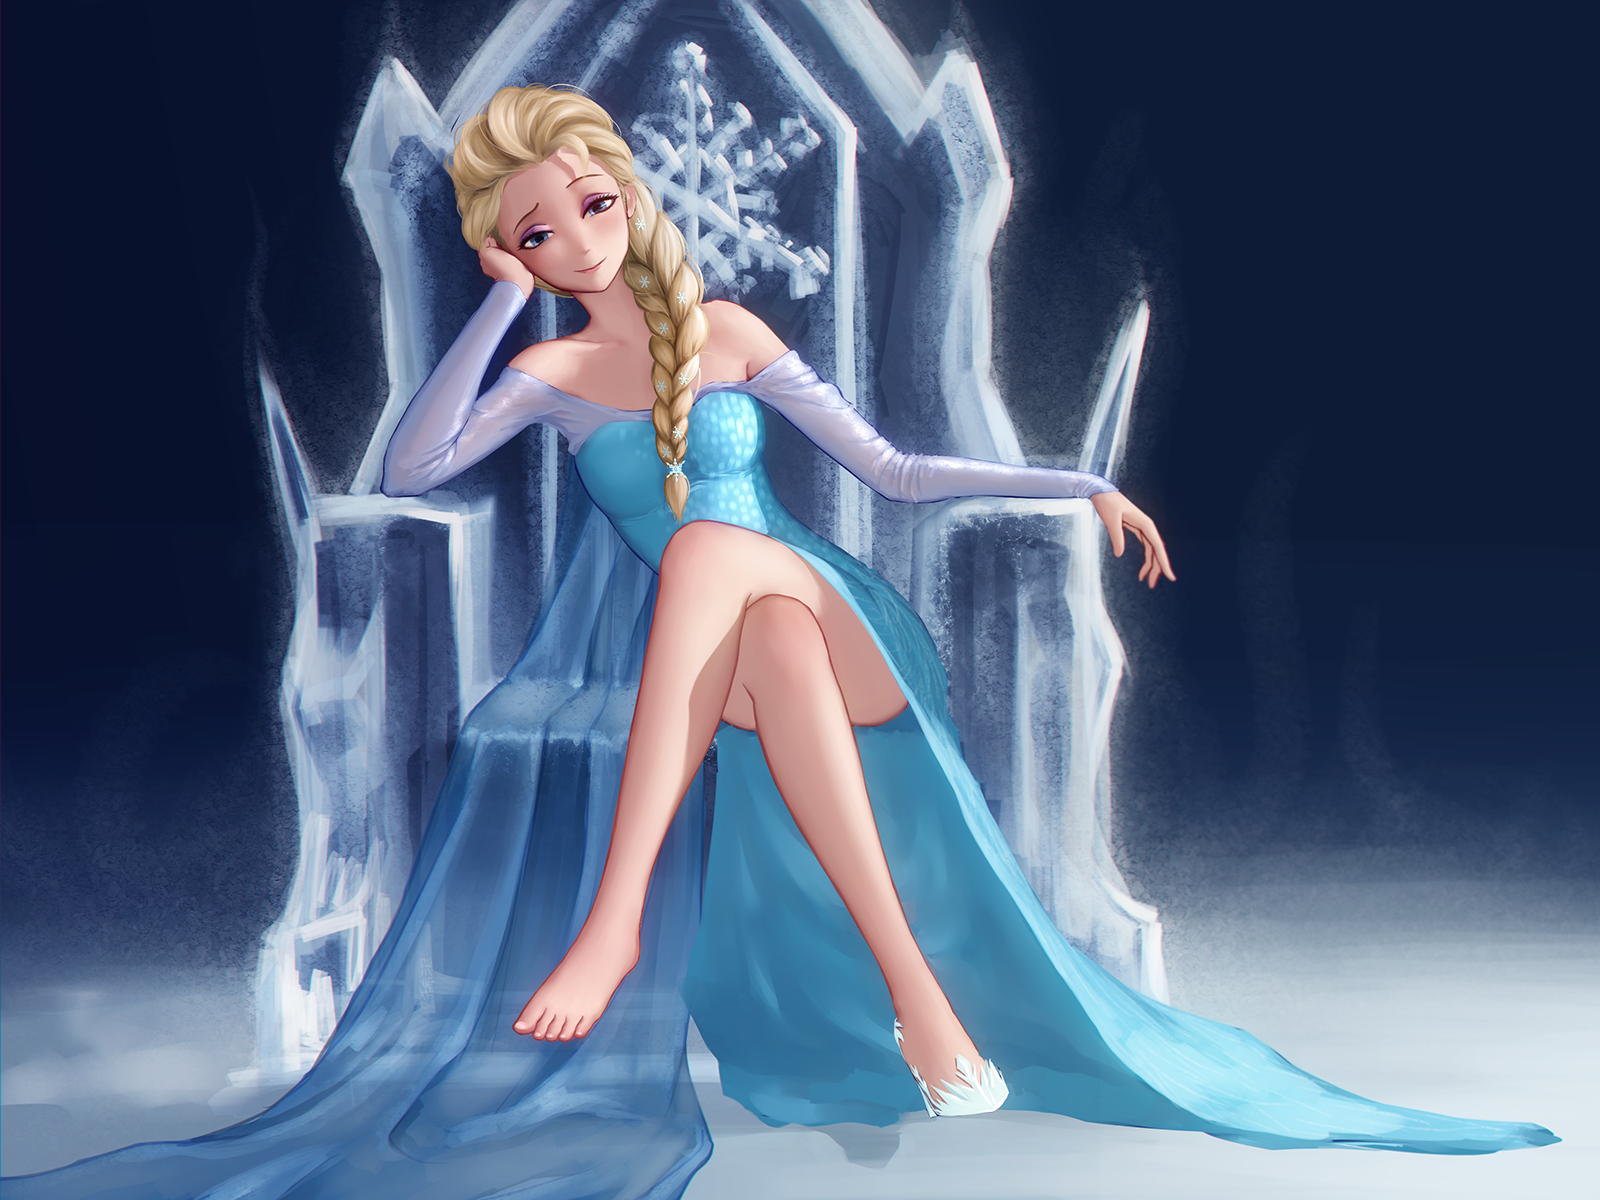 Anime Anime Girls Frozen Fever Frozen Movie Princess Elsa Long Hair Blonde Feet Legs Legs Crossed 1600x1200